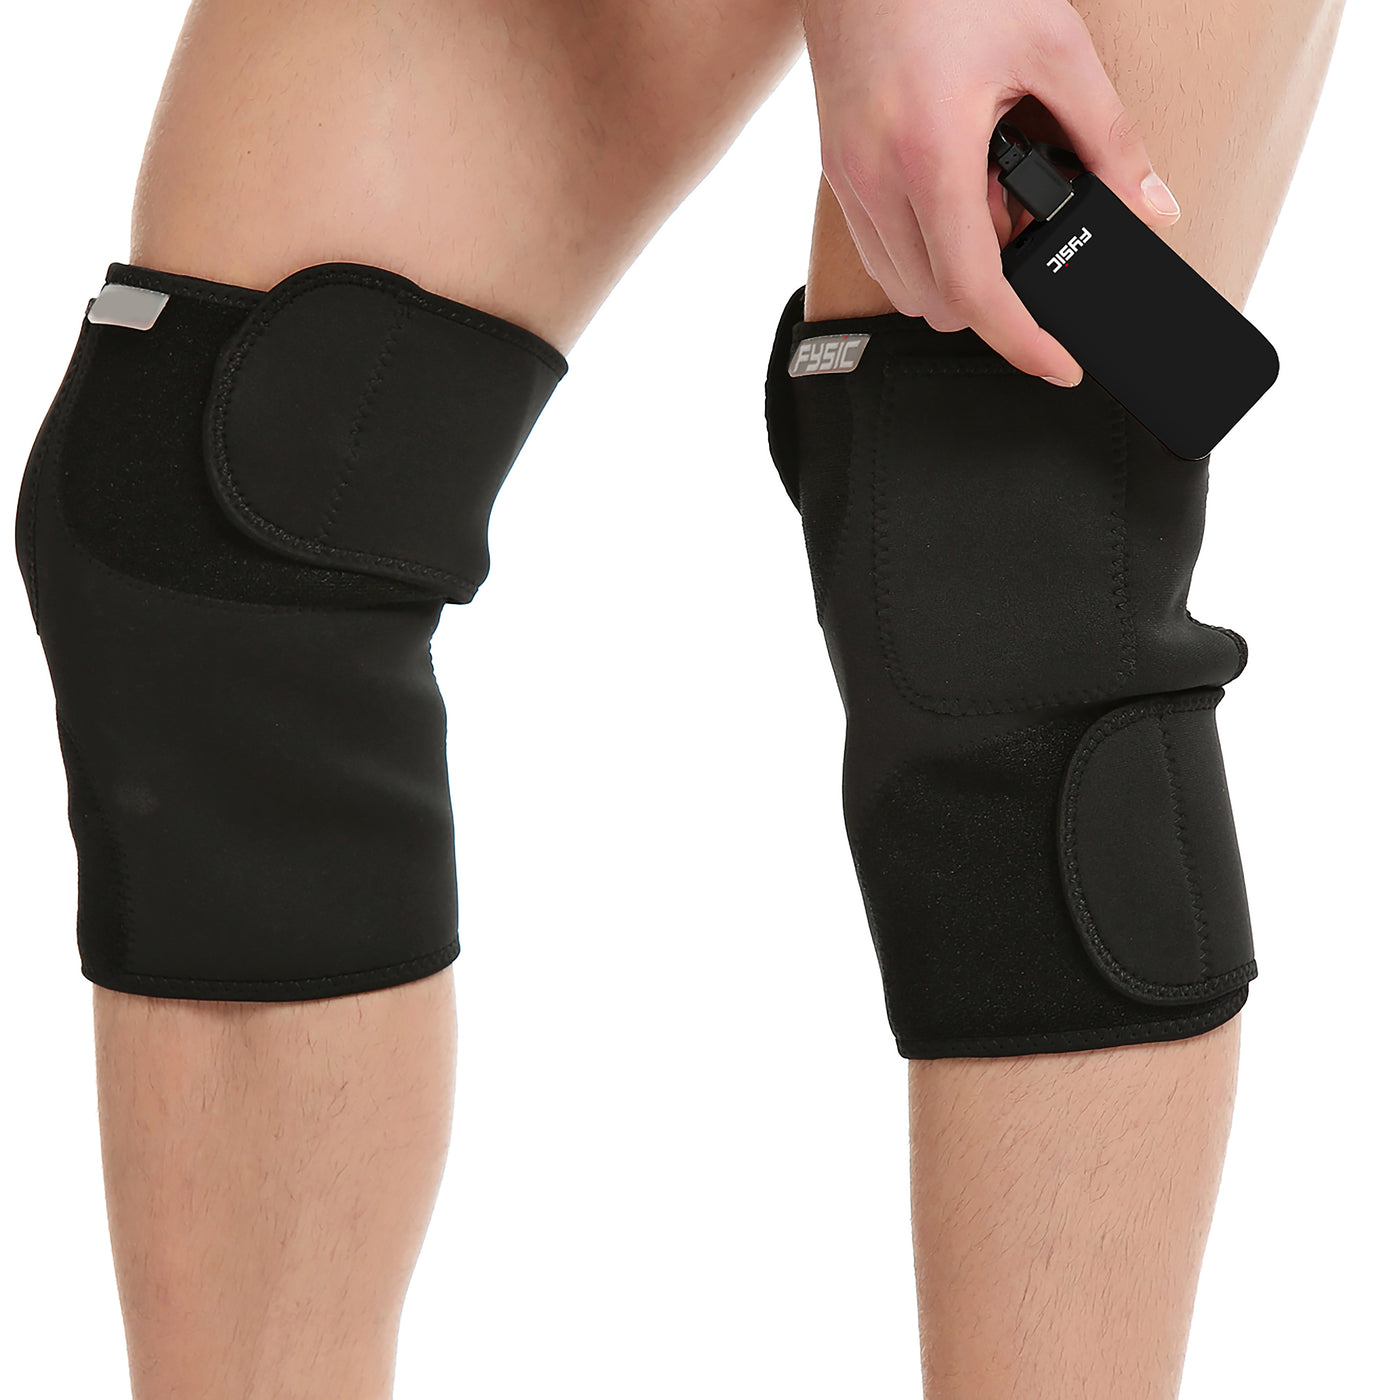 Fysic FHP-180L - Draadloze warmte bandage voor knie, links